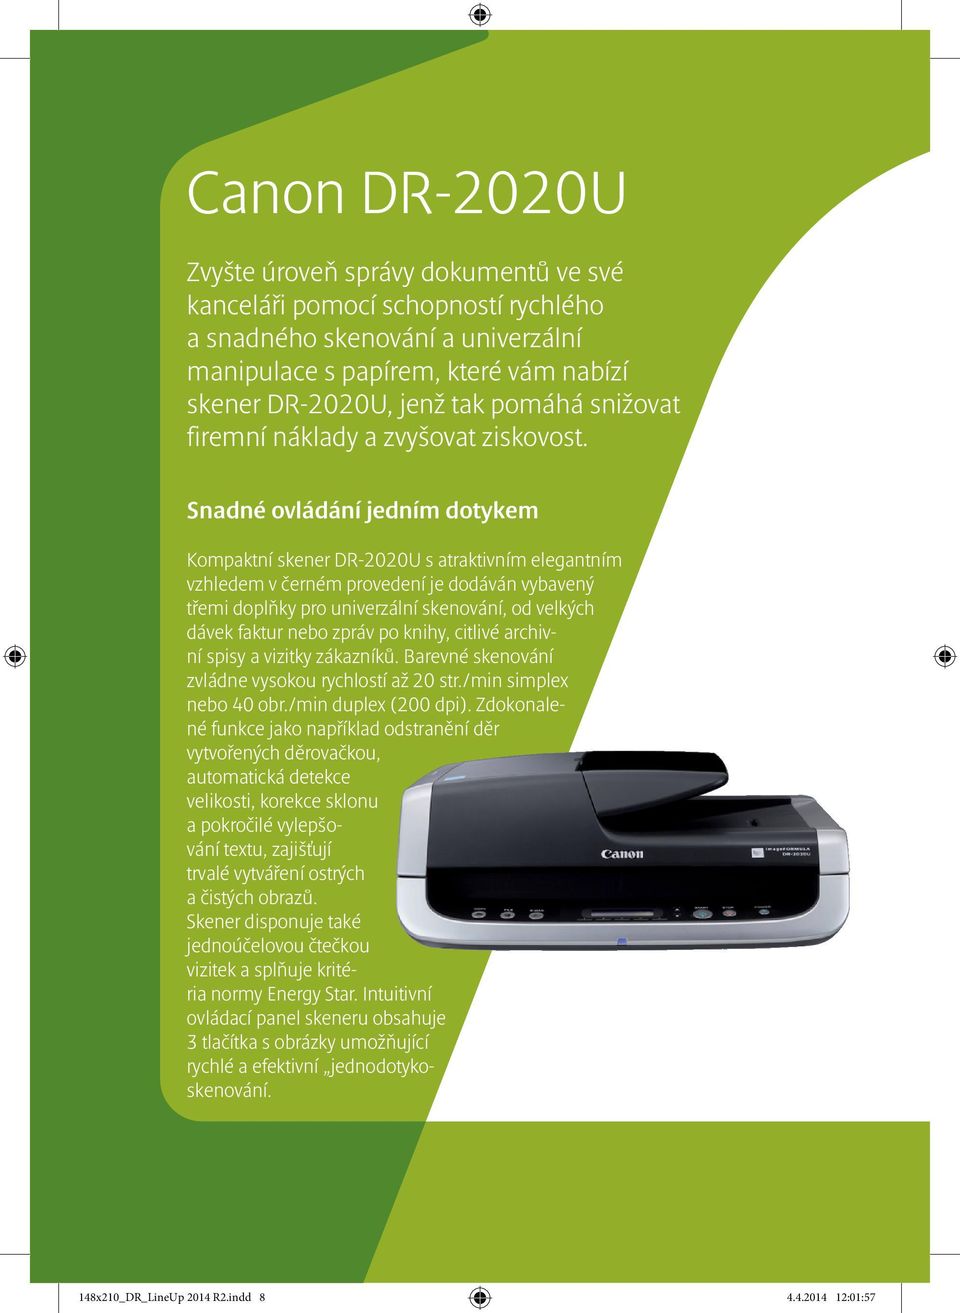 Snadné ovládání jedním dotykem Kompaktní skener DR-2020U s atraktivním elegantním vzhledem v černém provedení je dodáván vybavený třemi doplňky pro univerzální skenování, od velkých dávek faktur nebo